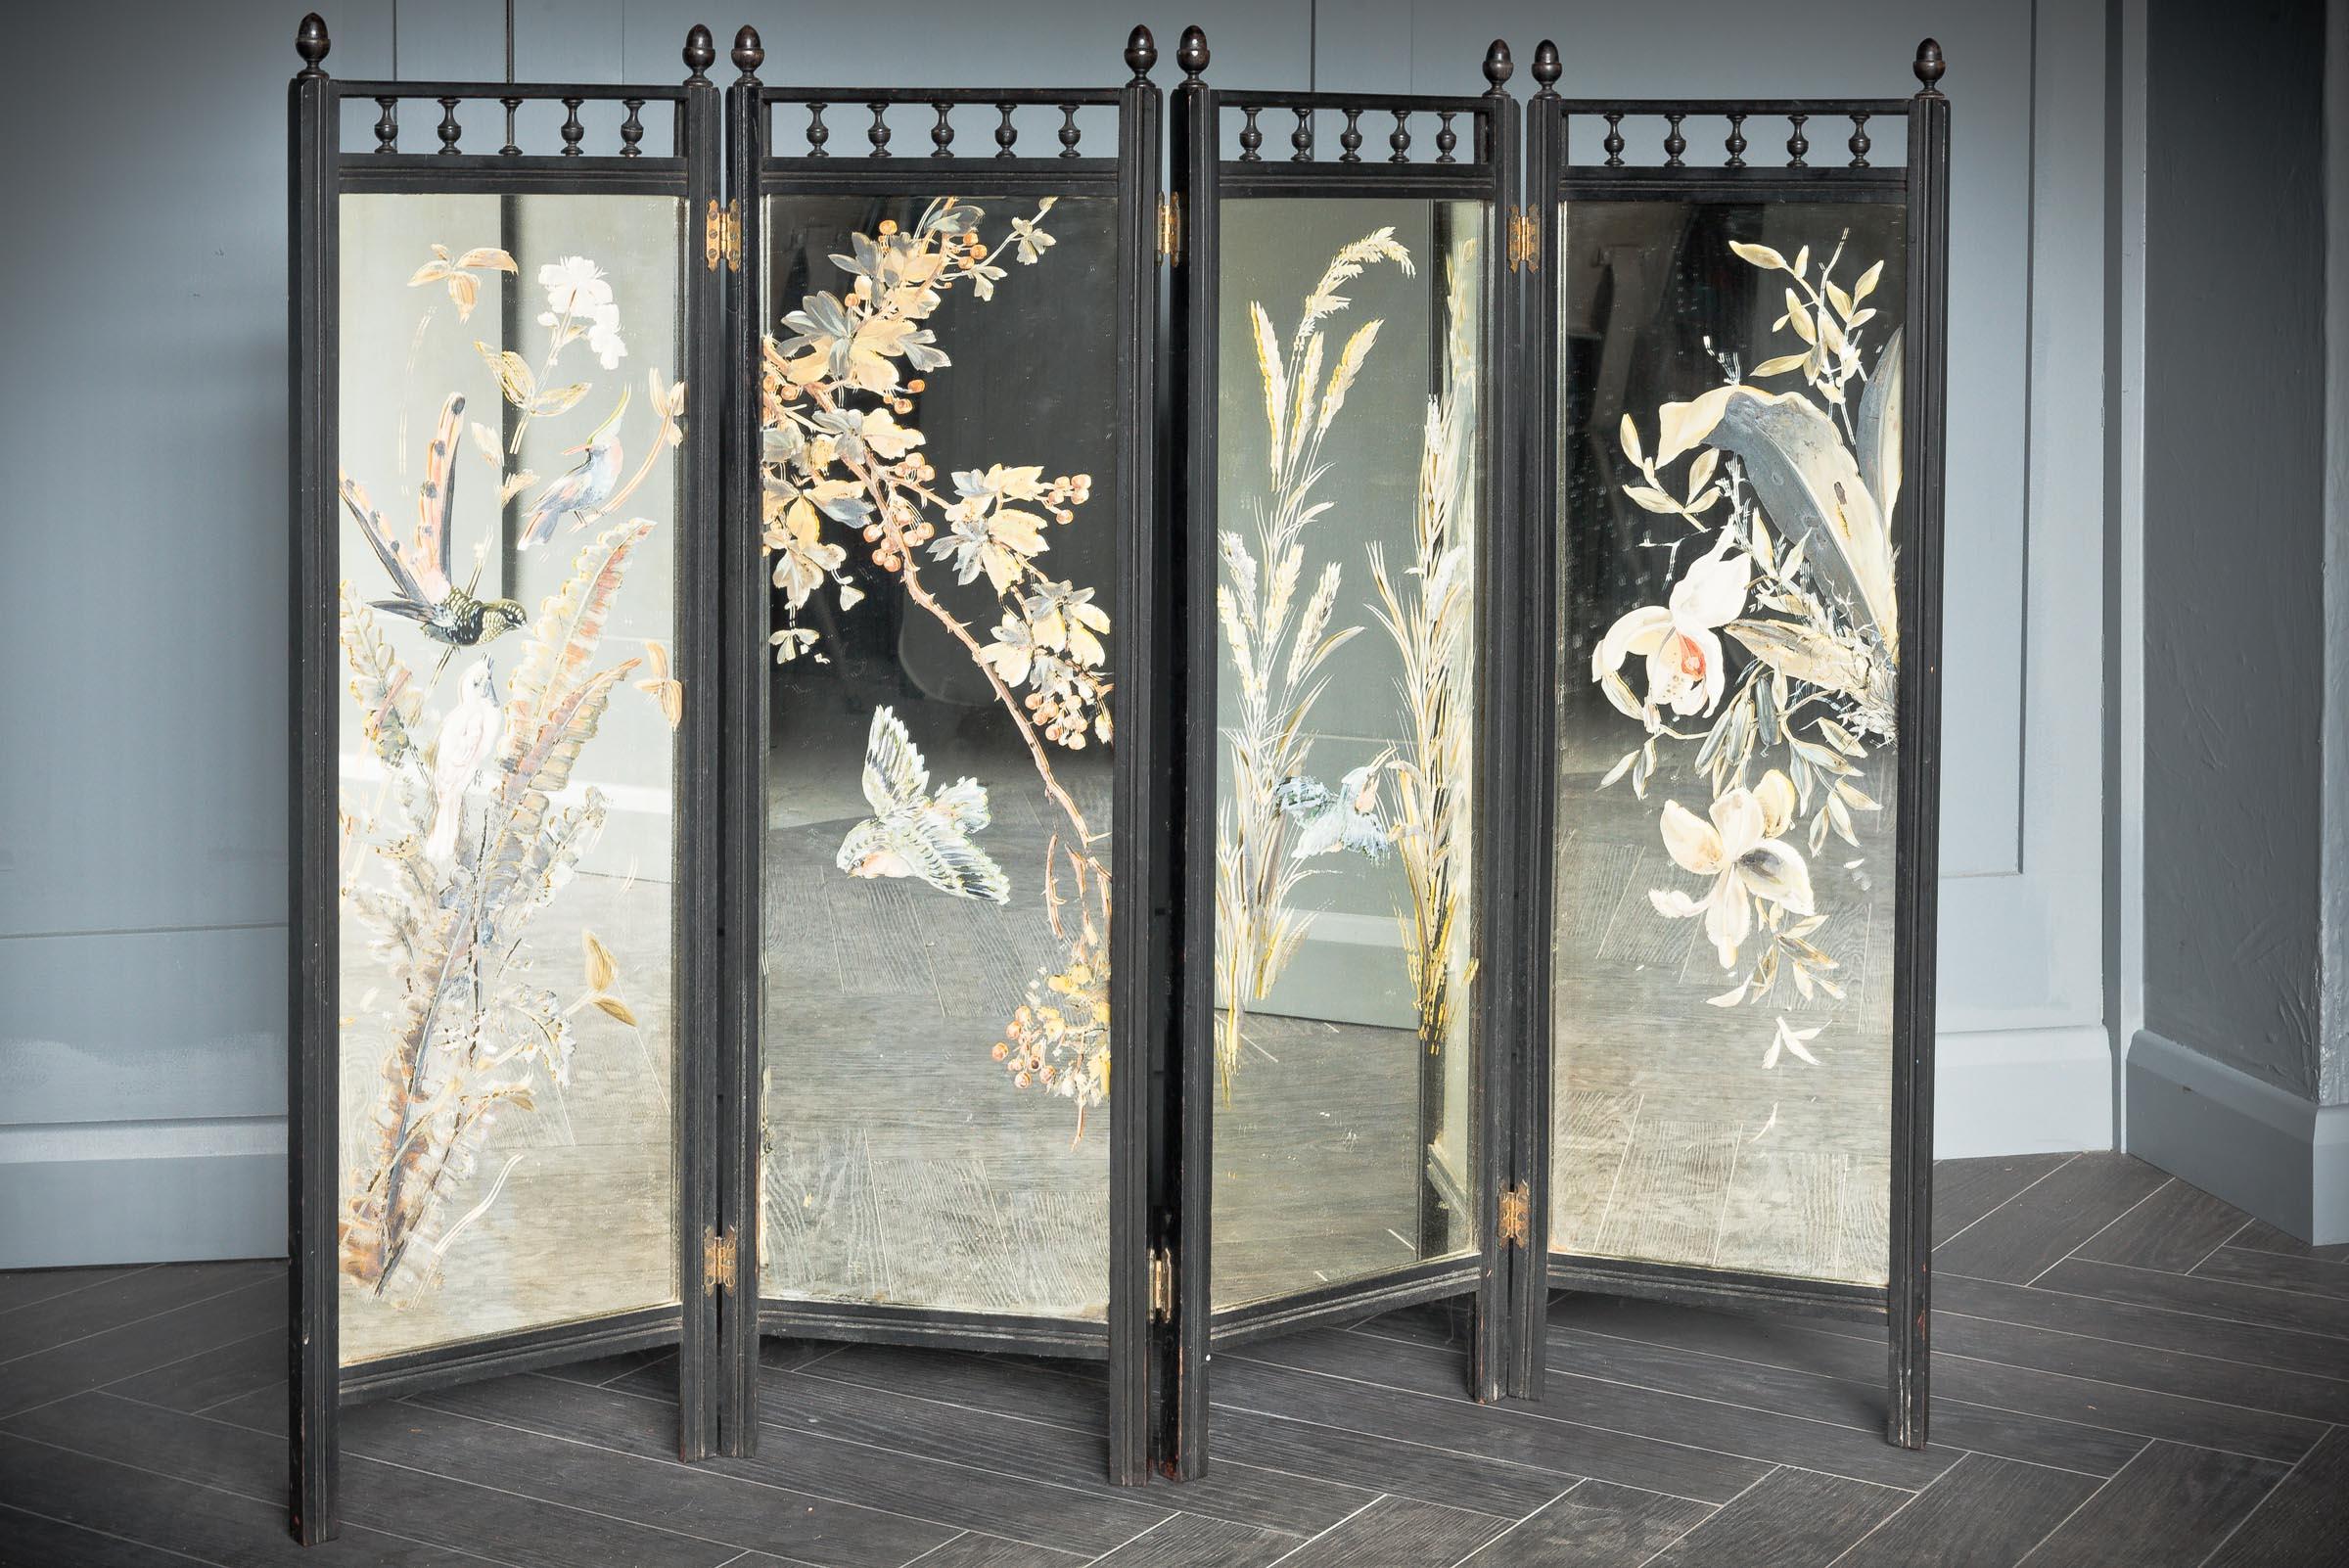 Cet étonnant écran miroir en bois en quatre parties présente un motif floral visuellement saisissant accompagné d'oiseaux en vol plané peints à la main sur la partie miroir de l'écran. Le design est typique de l'Angleterre victorienne. Le bois a été